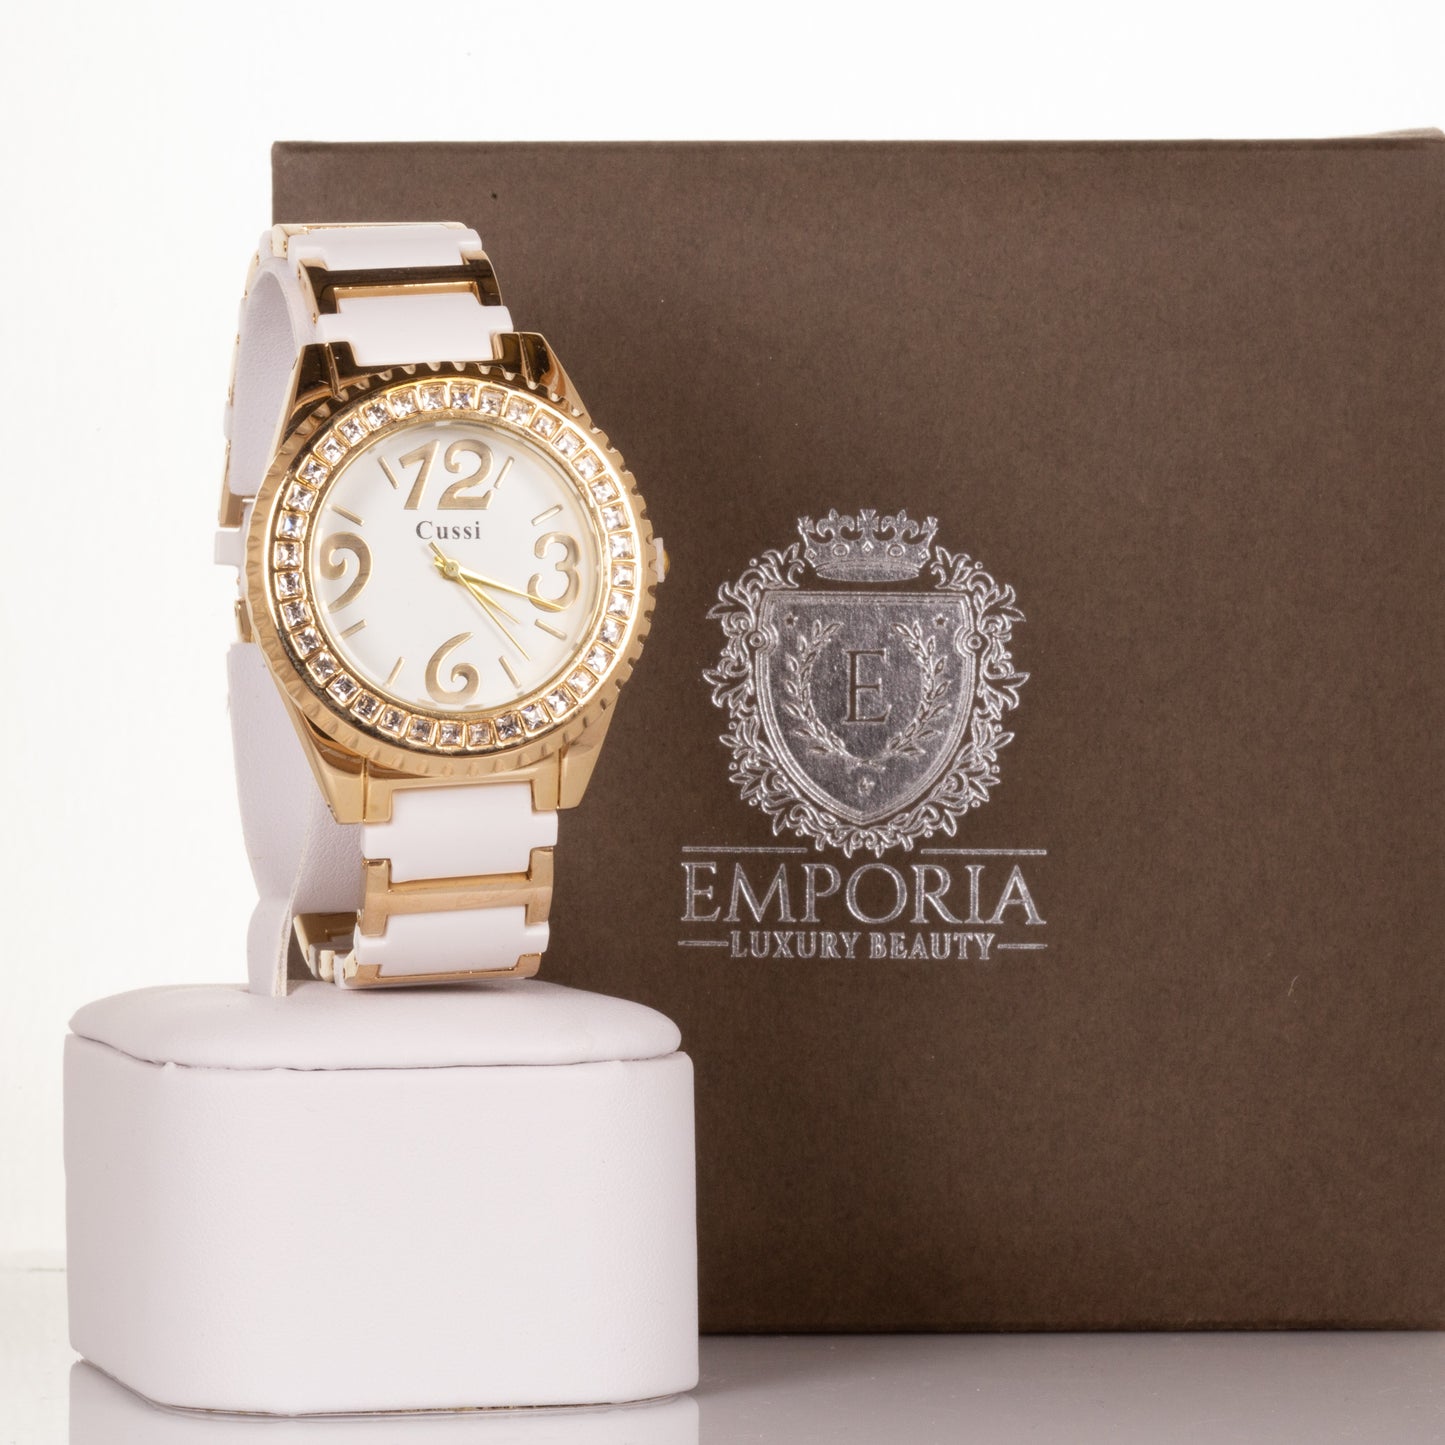 CUSSI Złoto-biały damski zegarek ze stopu metali z kolorowym paskiem i kryształkami kwarcu wokół tarczy